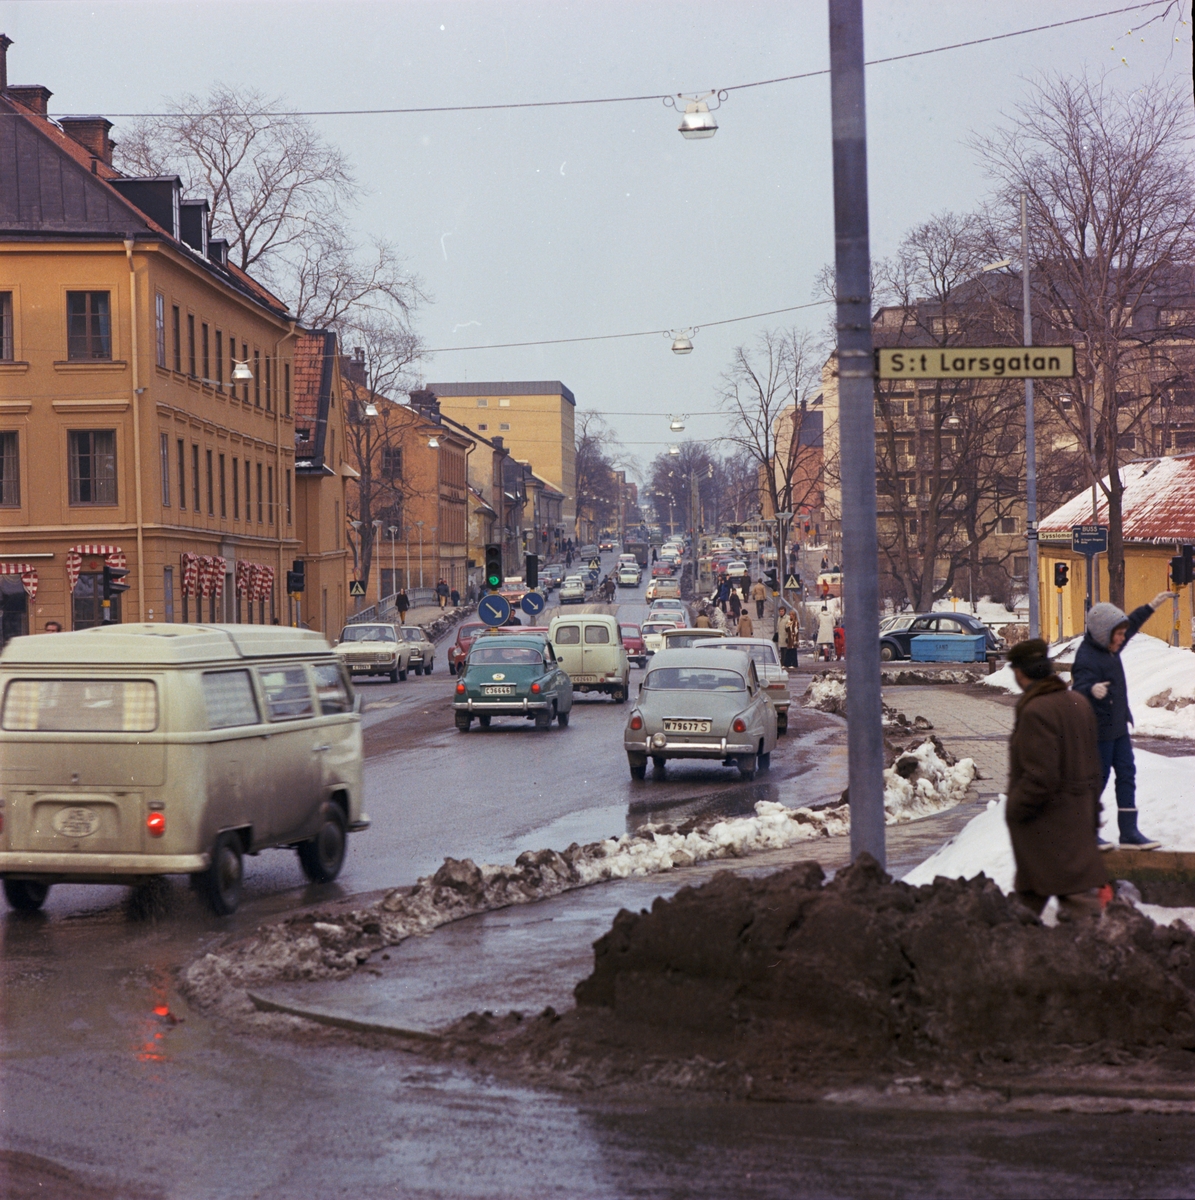 Trafik på S:t Olofsgatan, Uppsala 1970